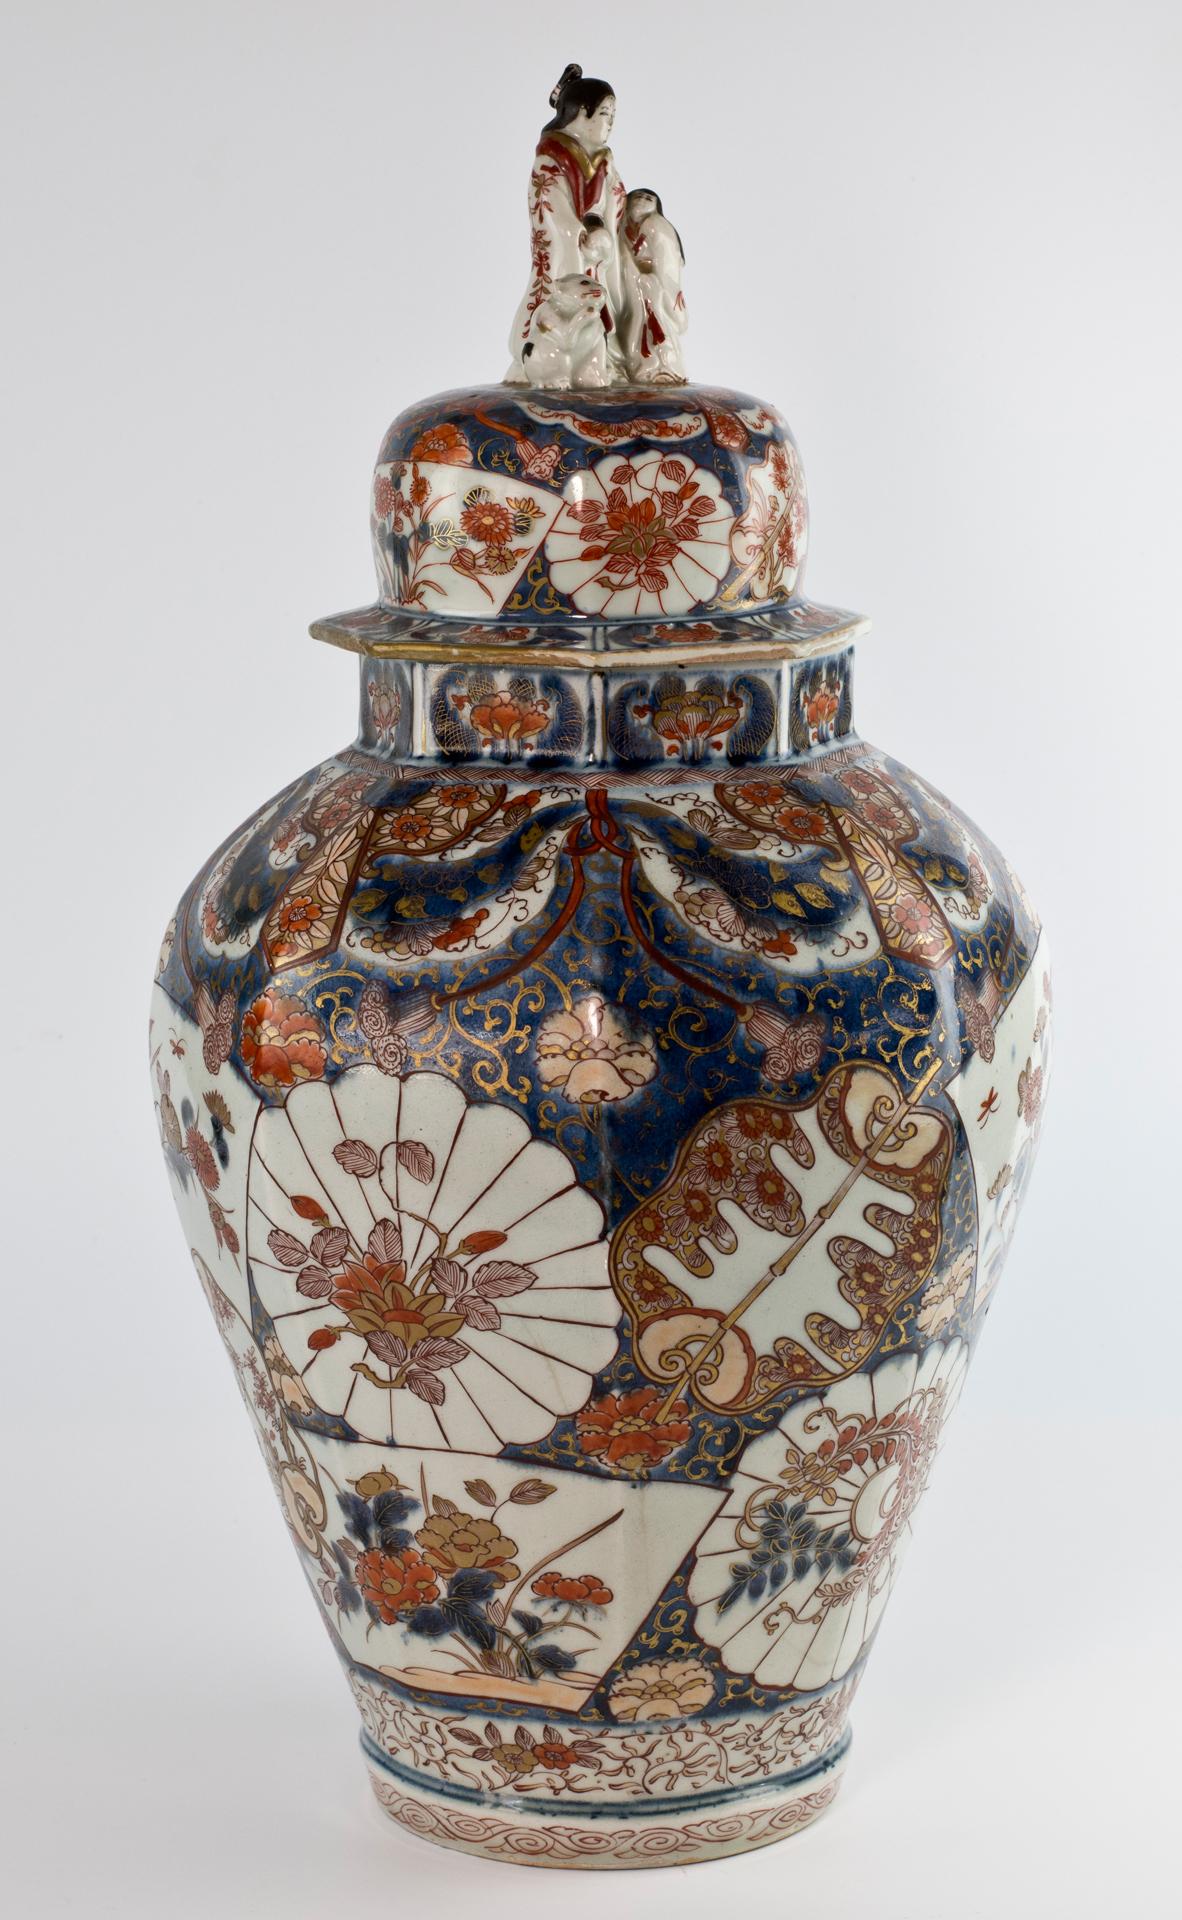 Als Teil unserer Sammlung japanischer Kunstwerke freuen wir uns, diese Arita-Vase aus der Edo-Periode (1612-1868) und den dazugehörigen Deckel aus der Genroku-Periode (1688-1704) des späten 17. Jahrhunderts anbieten zu können. Die sechseckige Vase